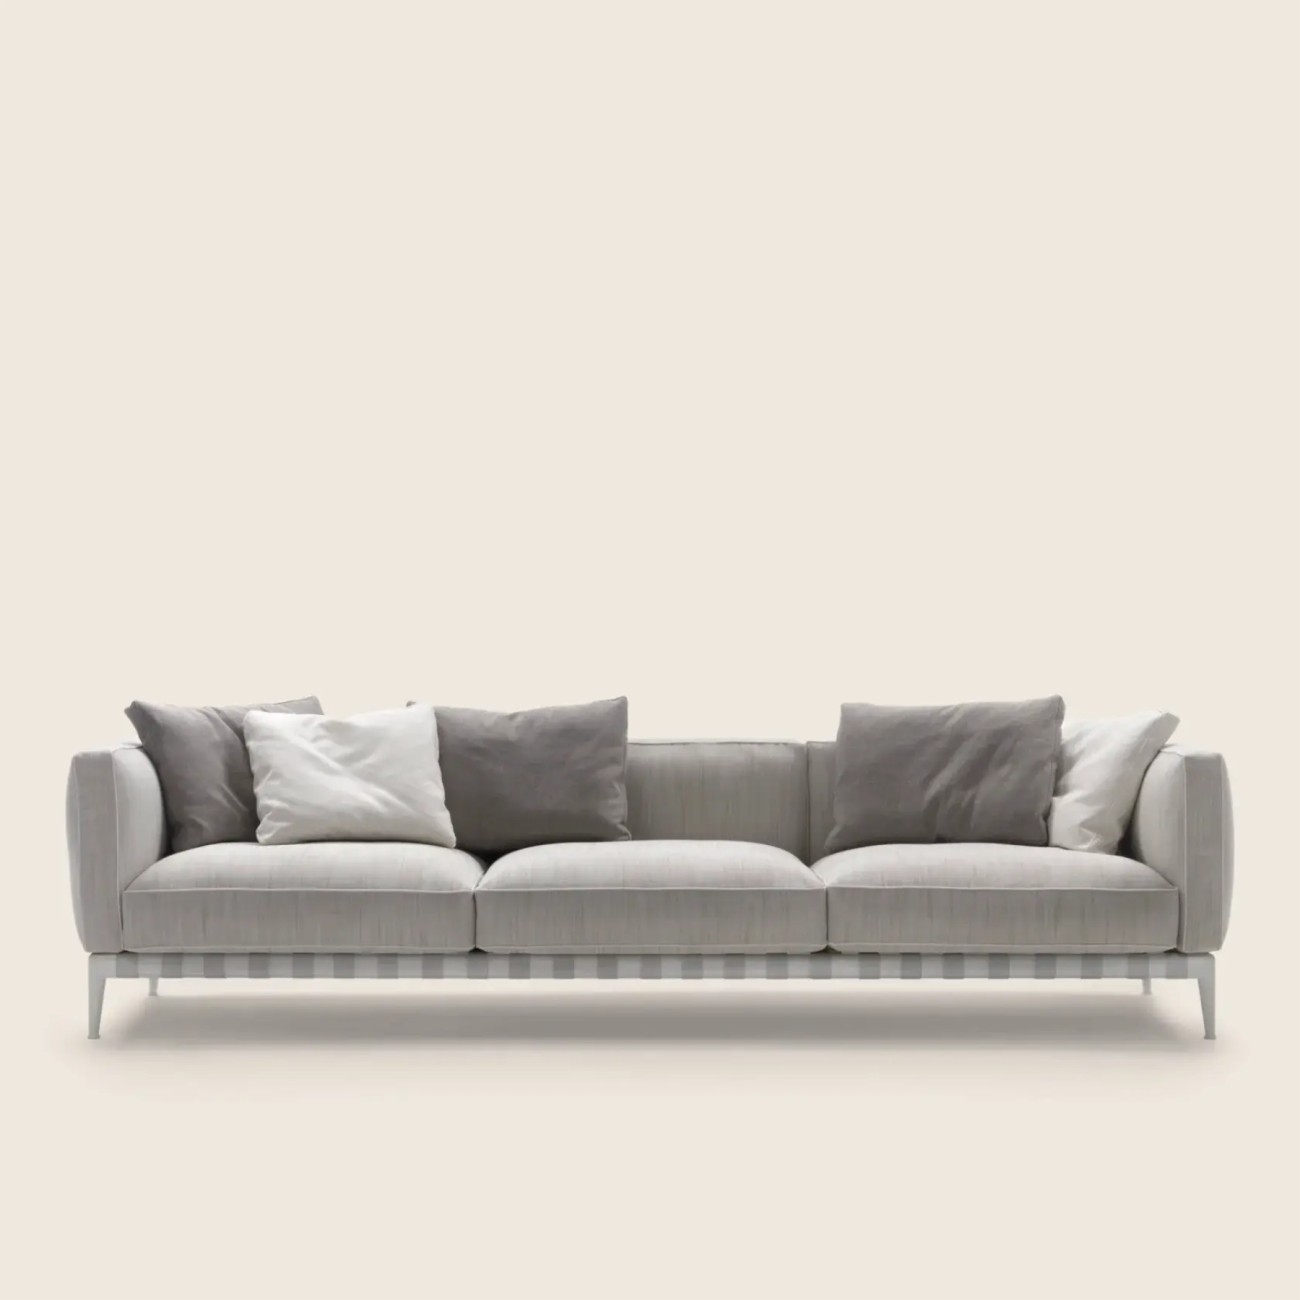 Atlante Outdoor Sofa Flexform